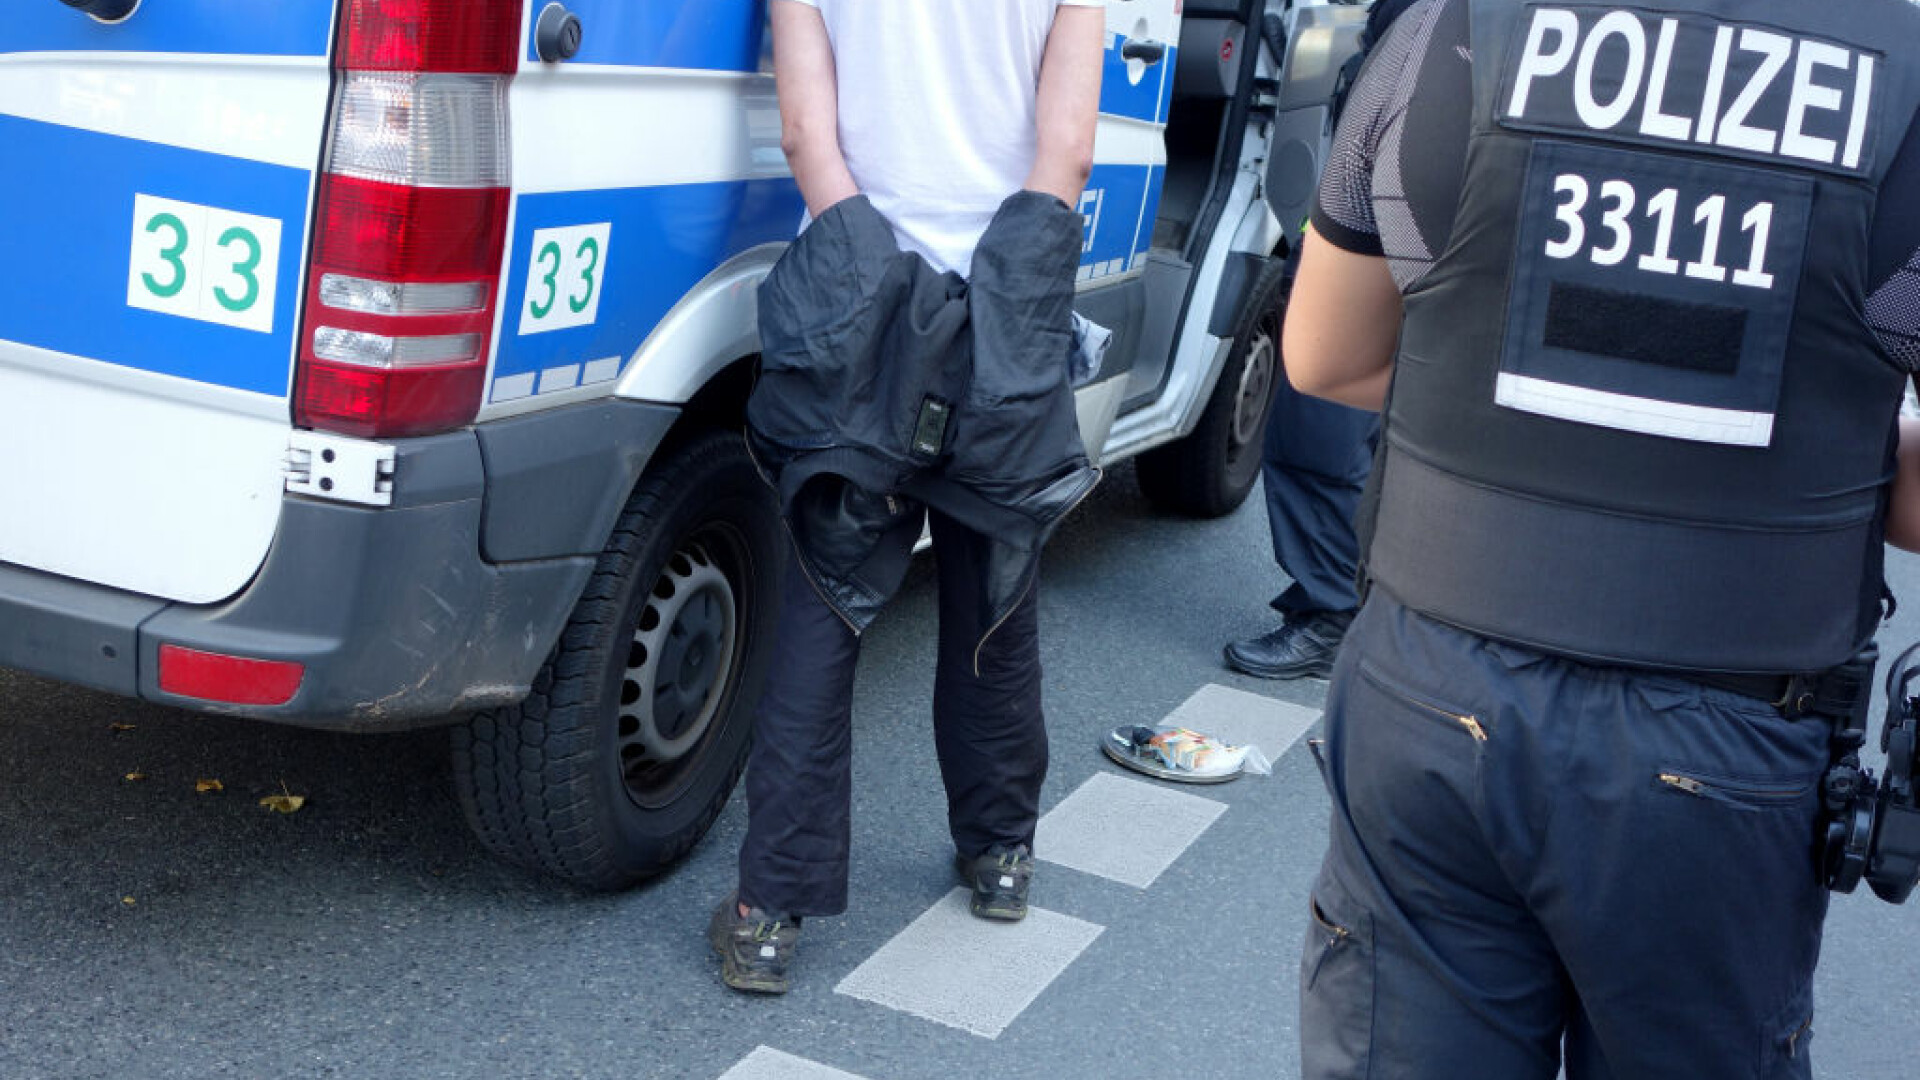 Caz șocant în Germania. Un român care și-a ucis iubita în bătaie, achitat: ”Legea interzice o pedeapsă”